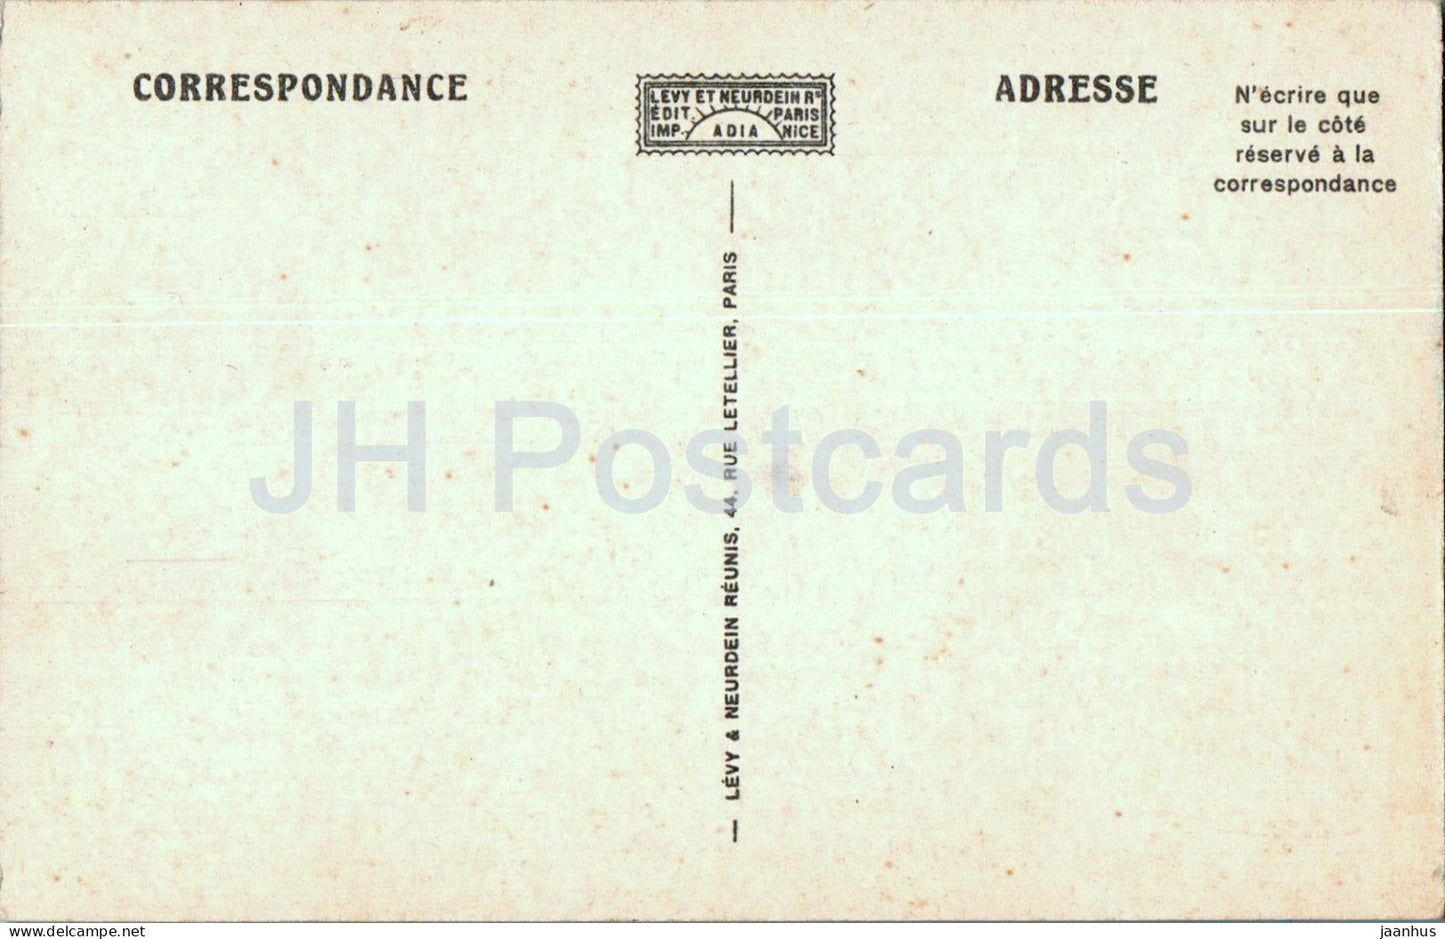 Allonzier - Gorges du Fier - Savoie Pittoresque - pont - 39 - carte postale ancienne - France - inutilisée 